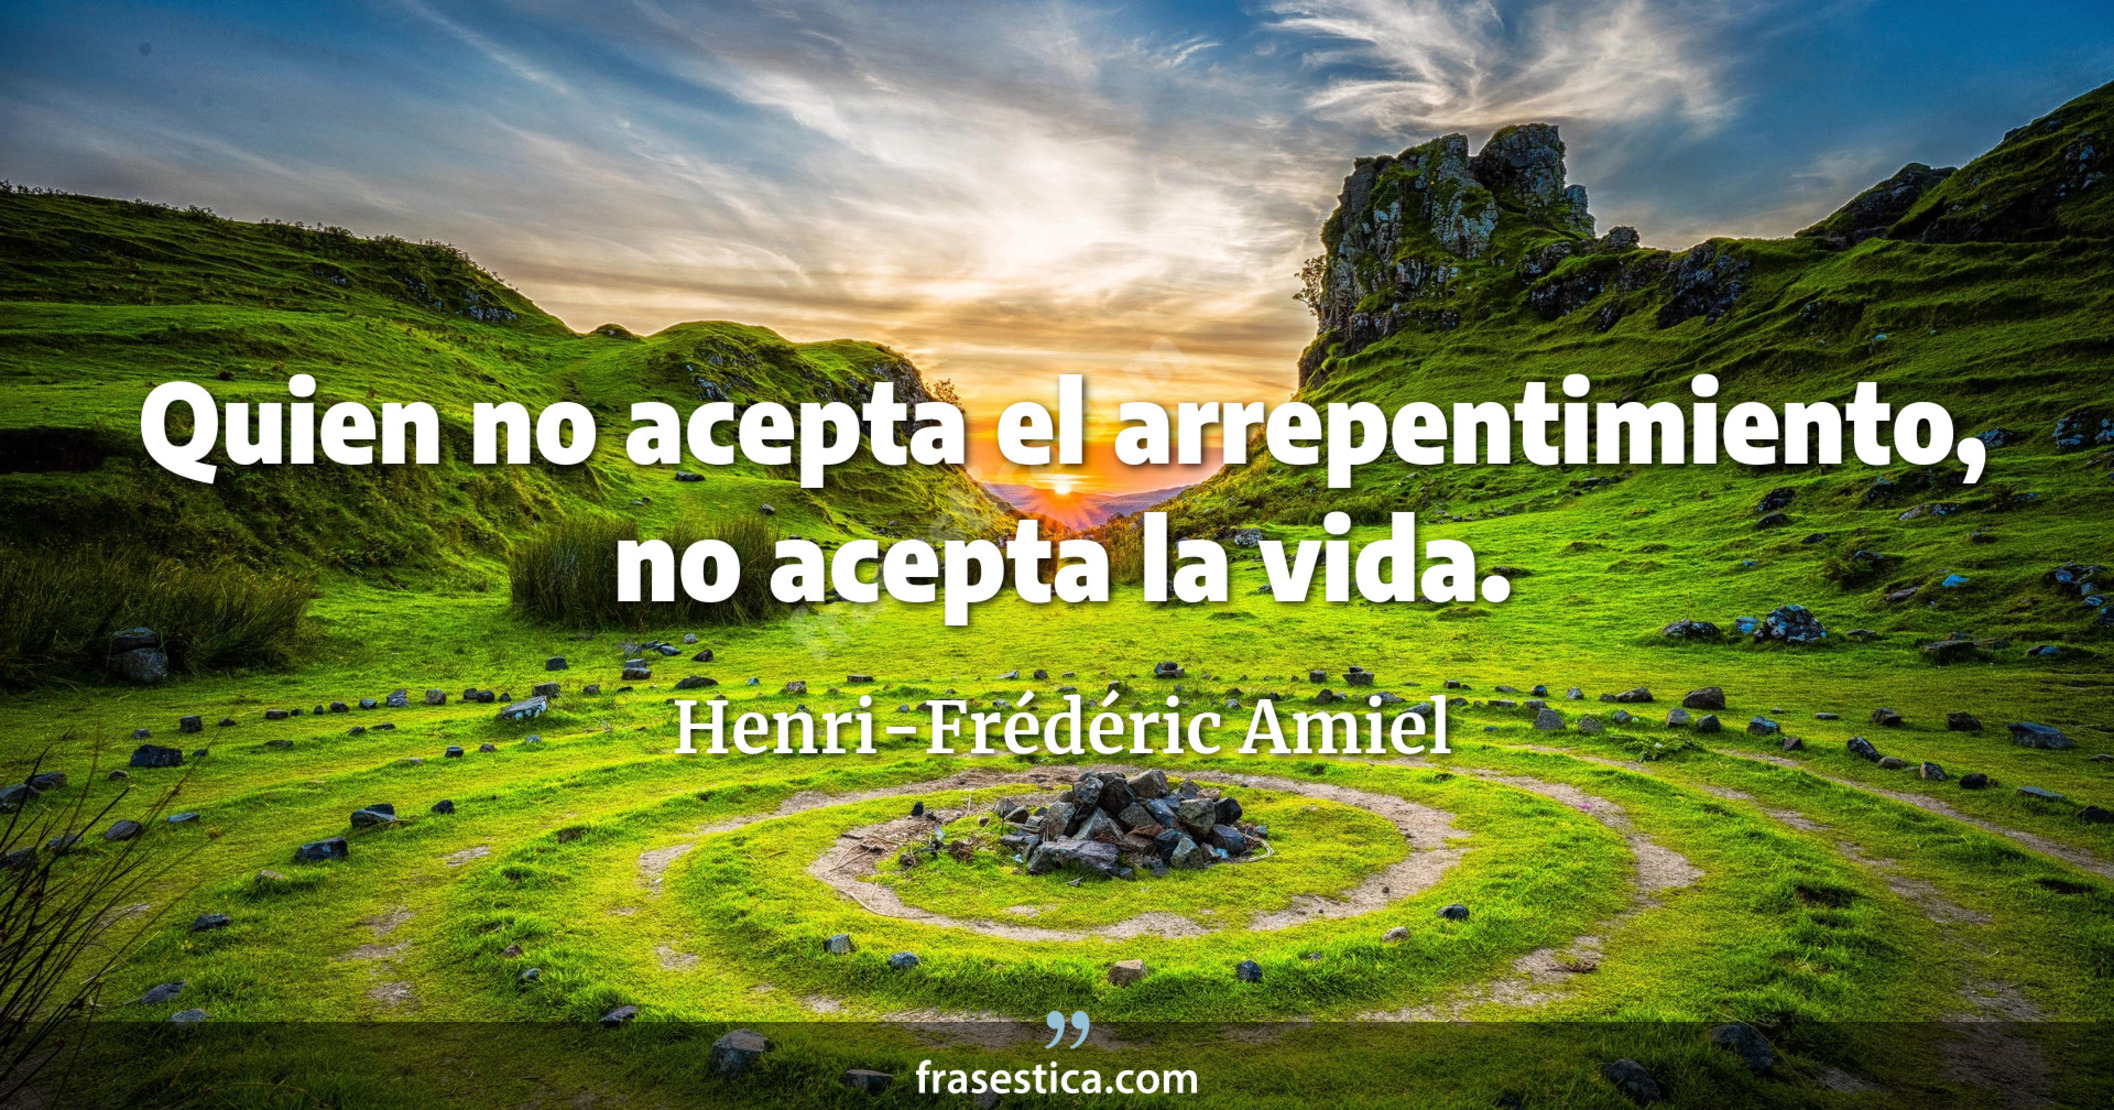 Quien no acepta el arrepentimiento, no acepta la vida. - Henri-Frédéric Amiel